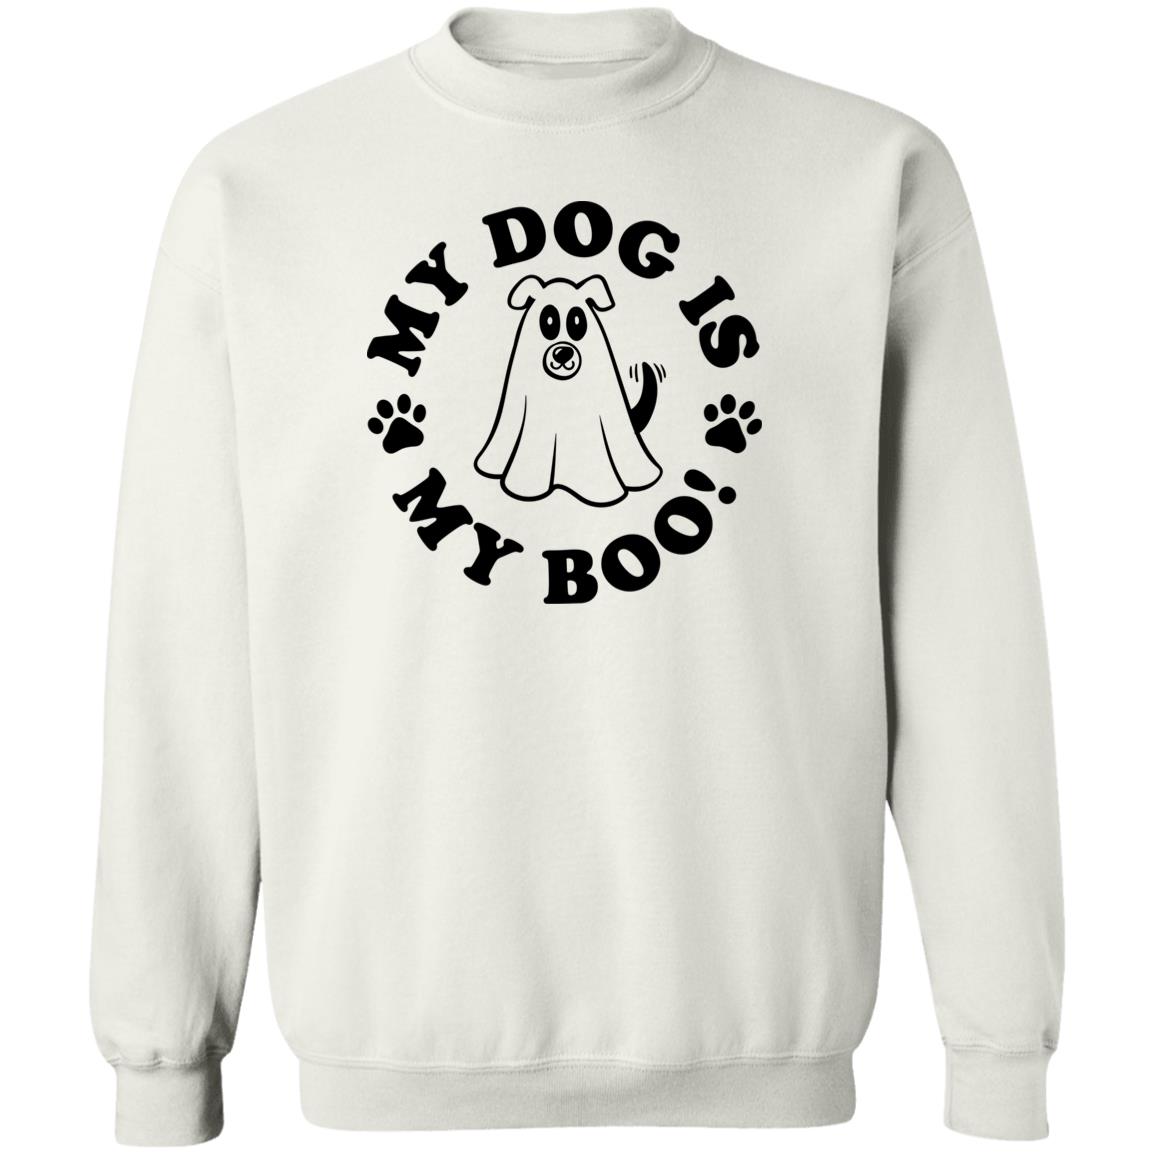 My Dog Is My Boo! Sweatshirt White